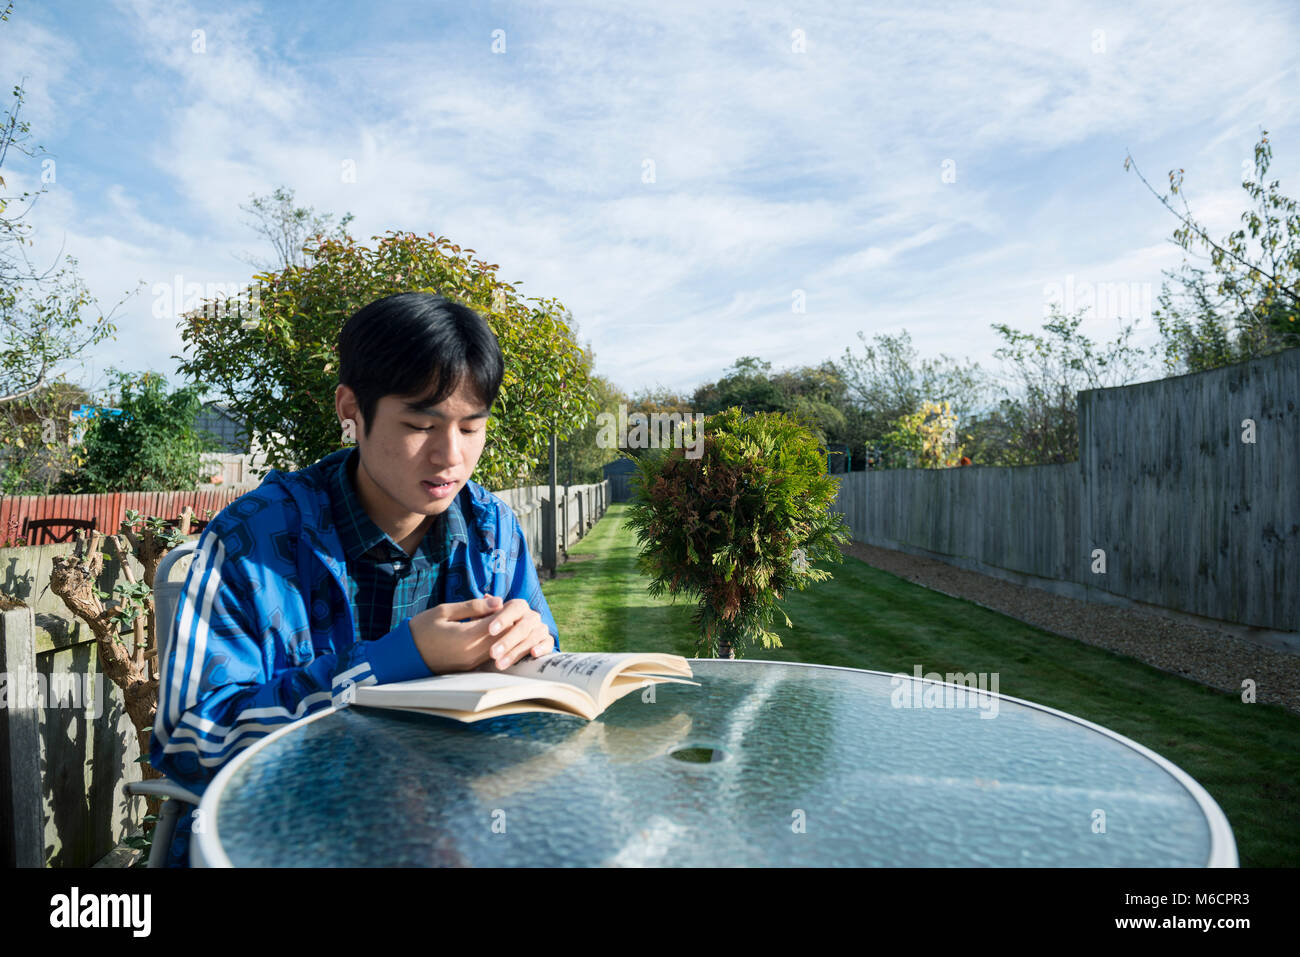 Un jeune étudiant asiatique se trouve à l'extérieur dans le jardin de la chambre d'étudiant la lecture d'un livre Banque D'Images